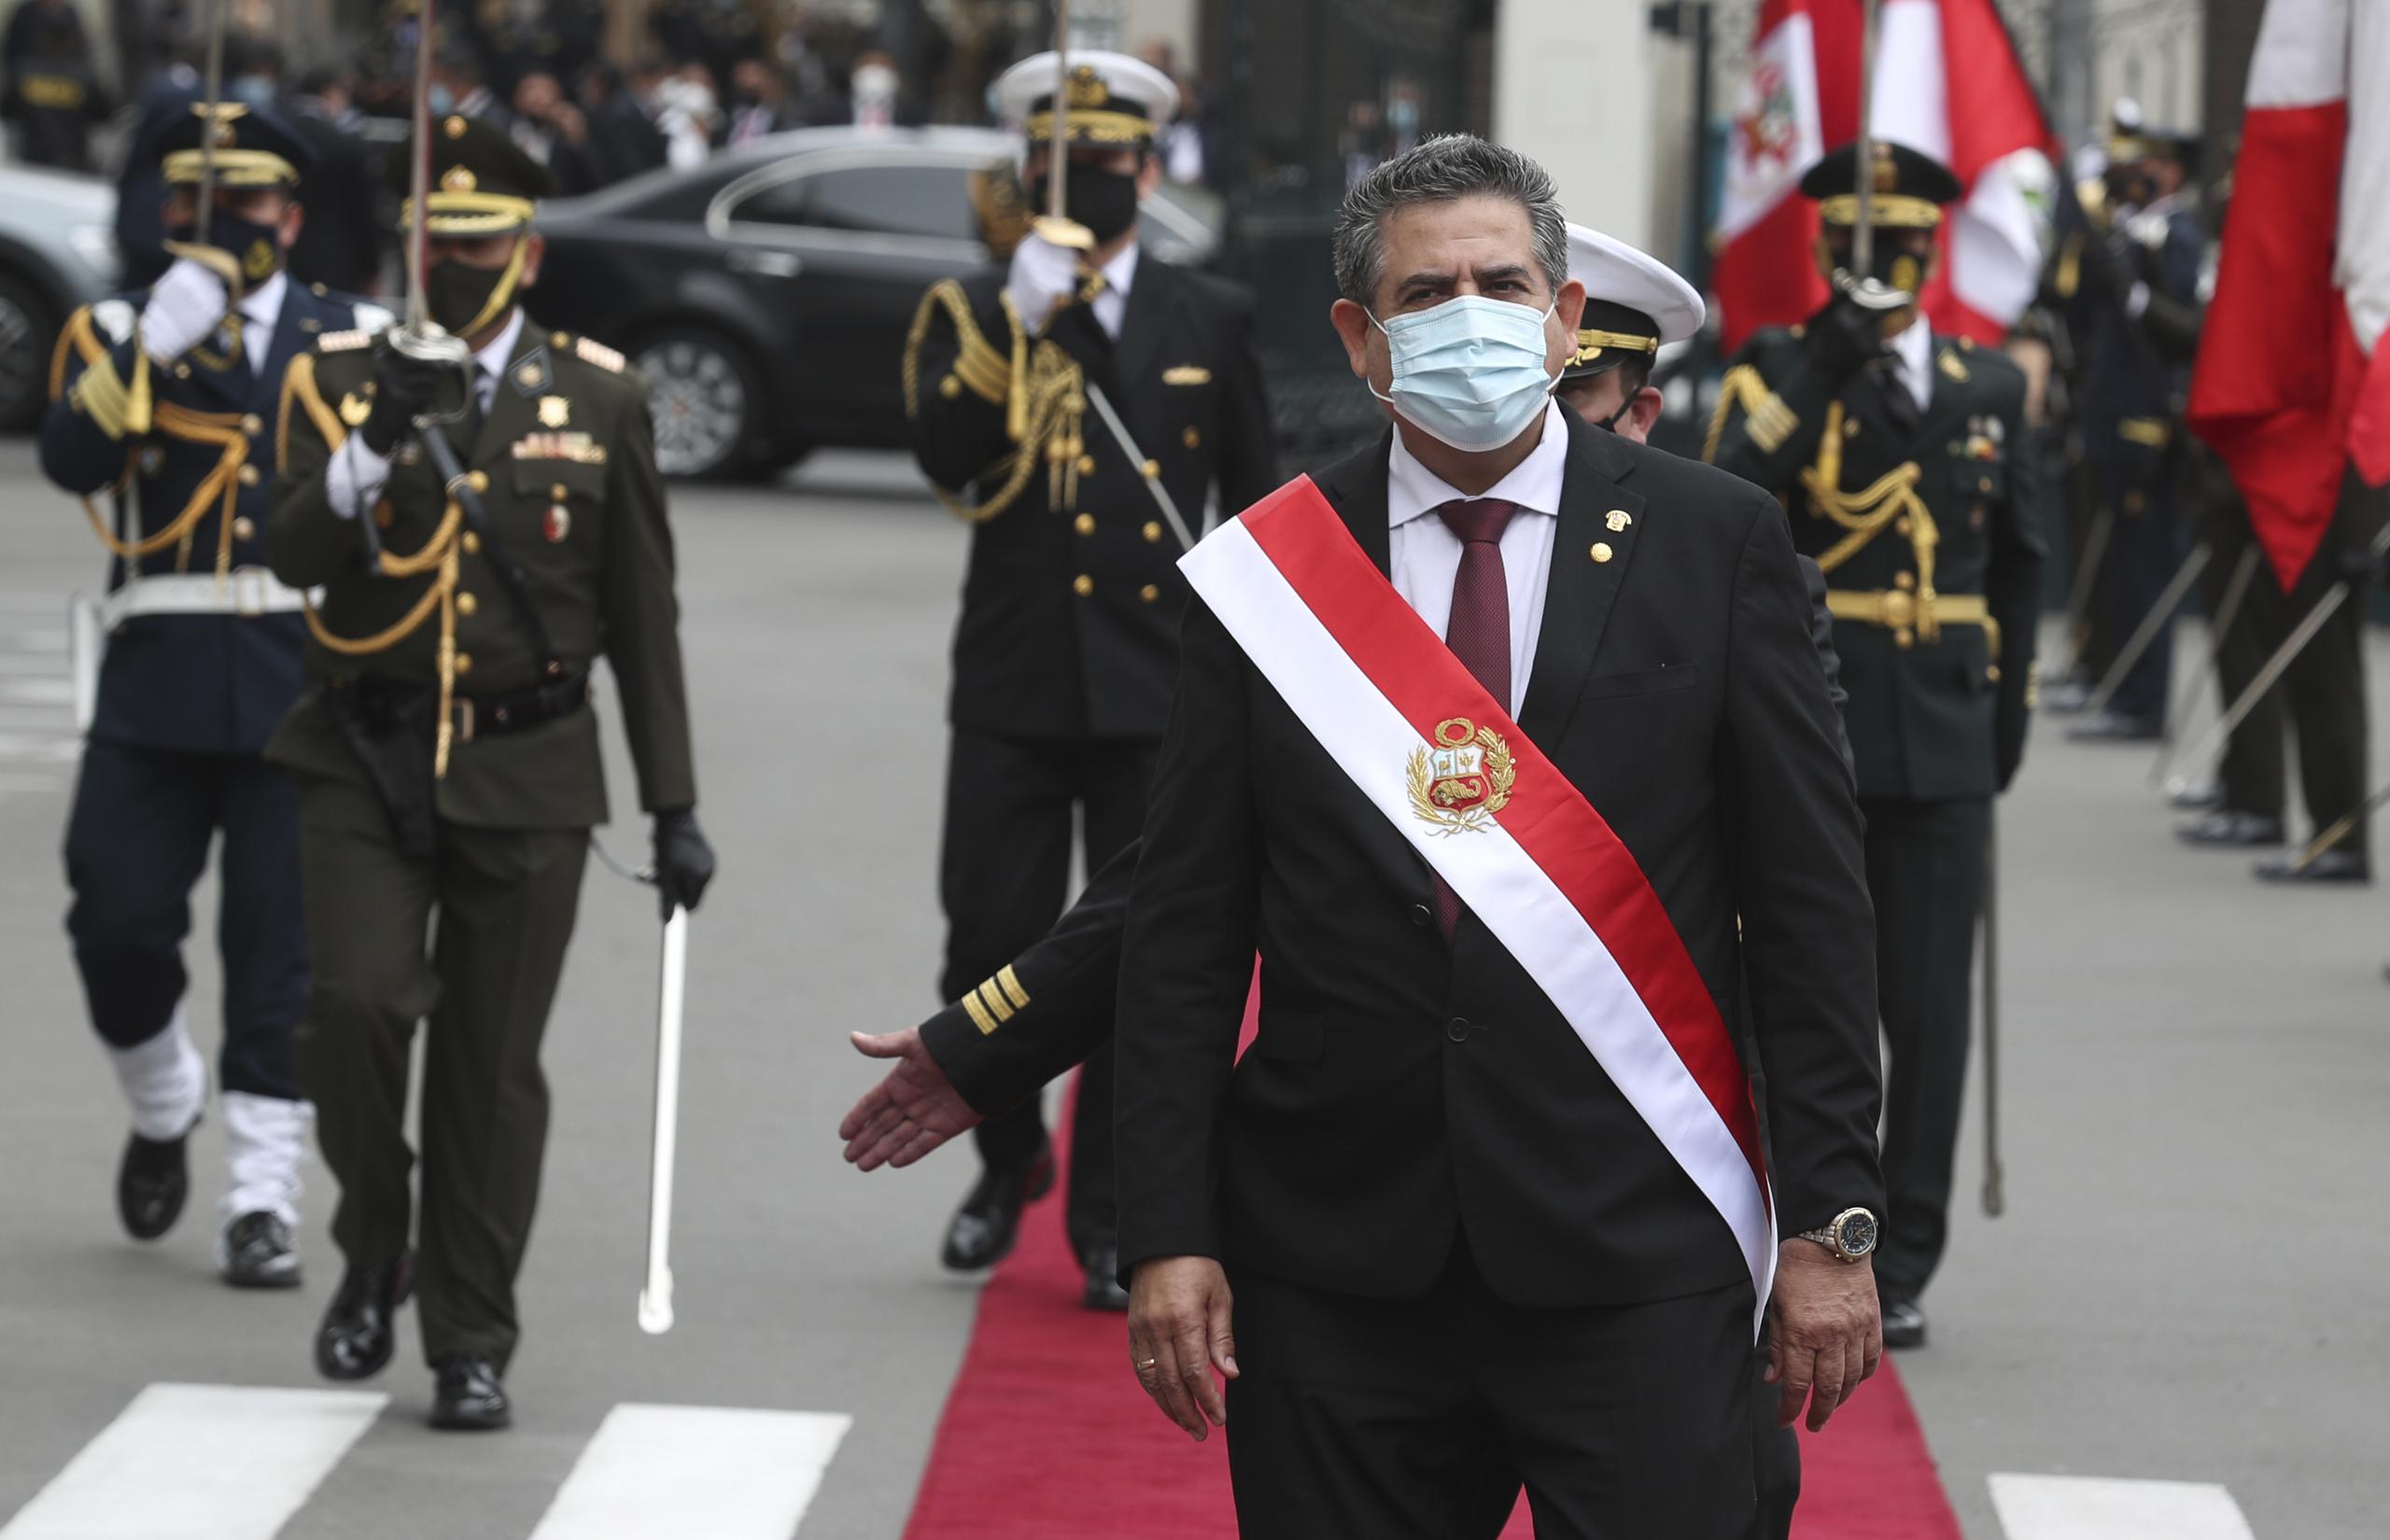 Manuel Merino camina afuera del edificio del Congreso luego de jurar como nuevo presidente de Perú en reemplazo de Martín Vizcarra, quien fue destituido por los legisladores la noche anterior en Lima.